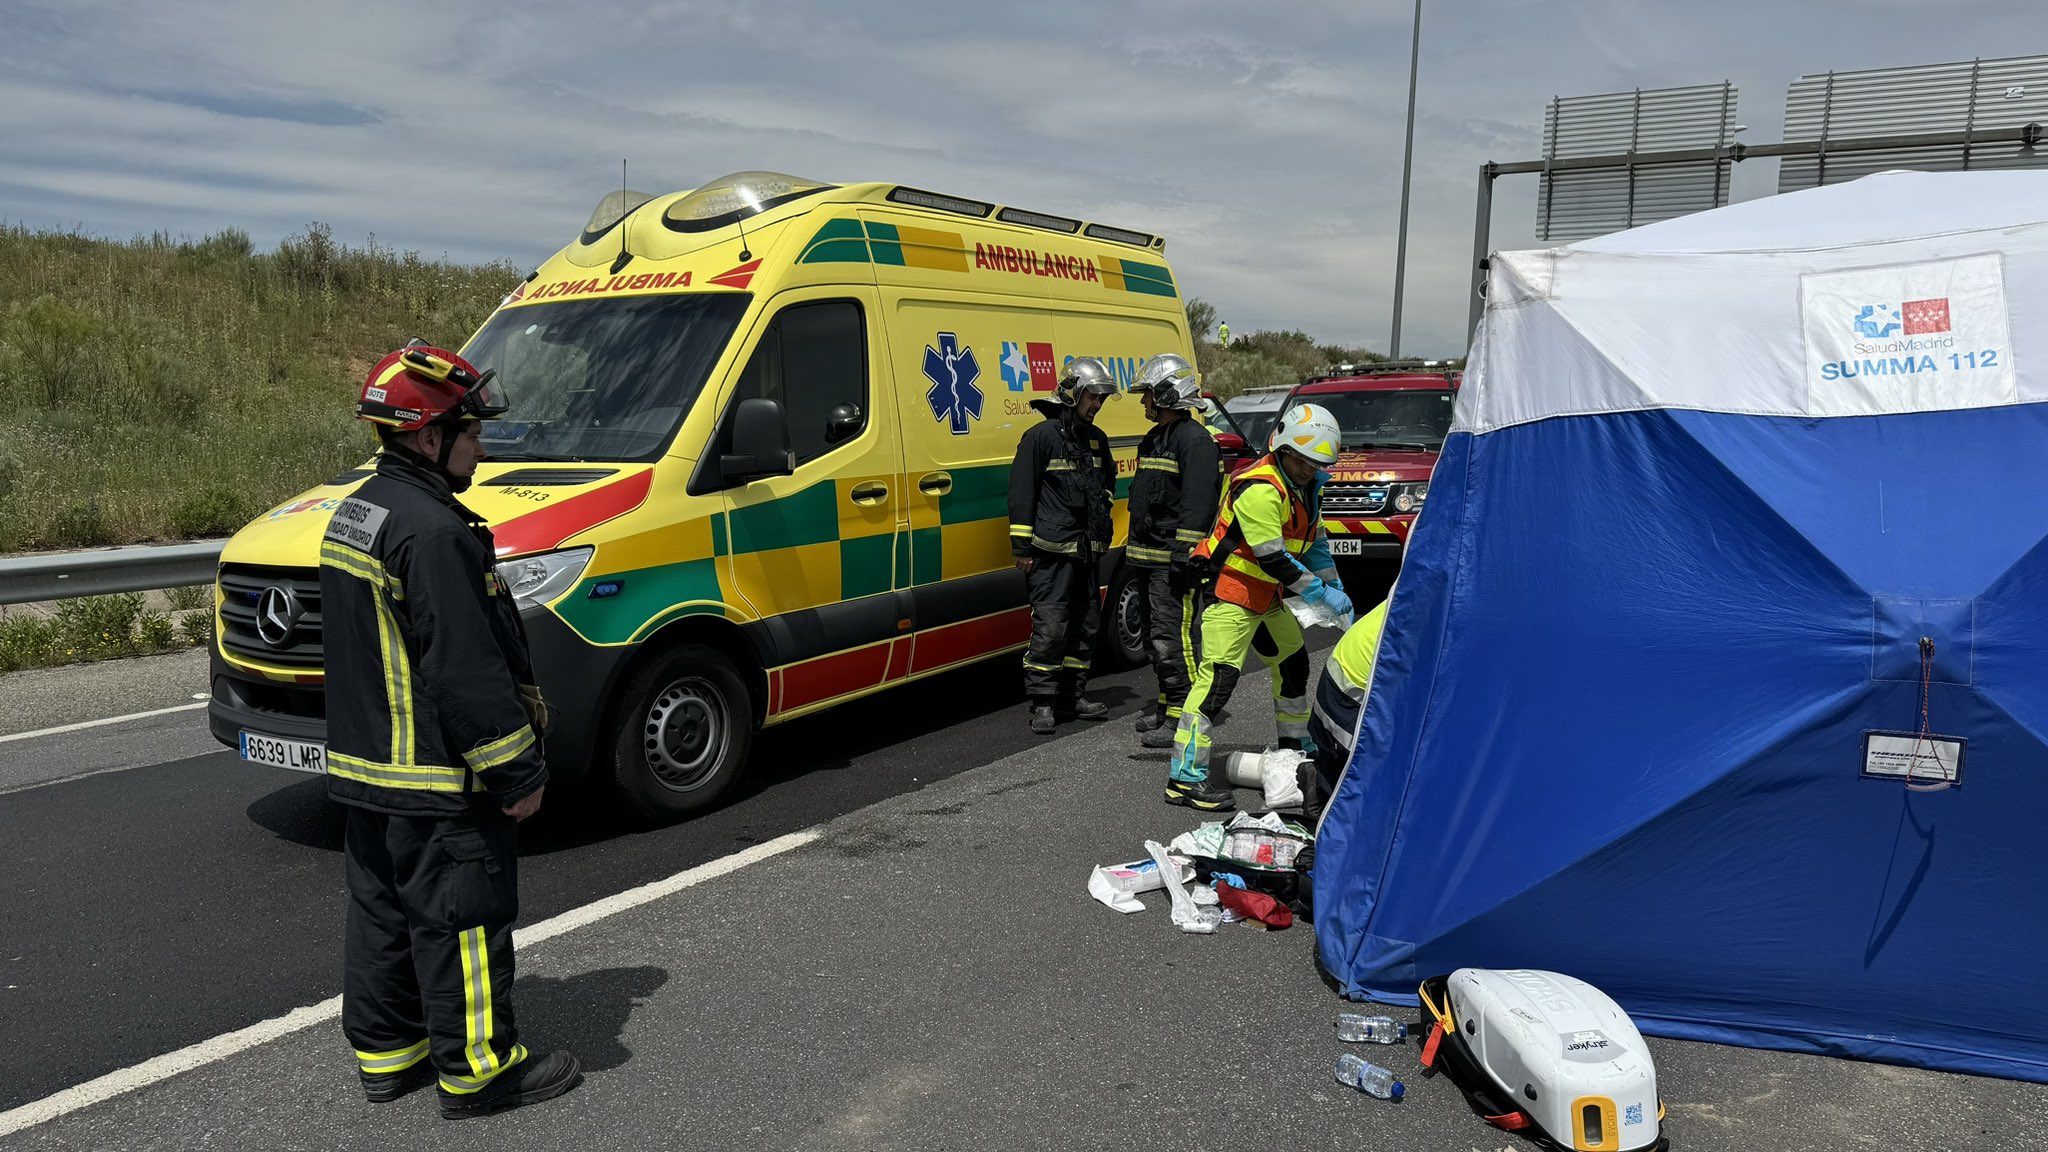 112 Comunidad de Madrid.- Un hombre de 70 años fallece en un accidente en la M-50 tras chocar con un camión